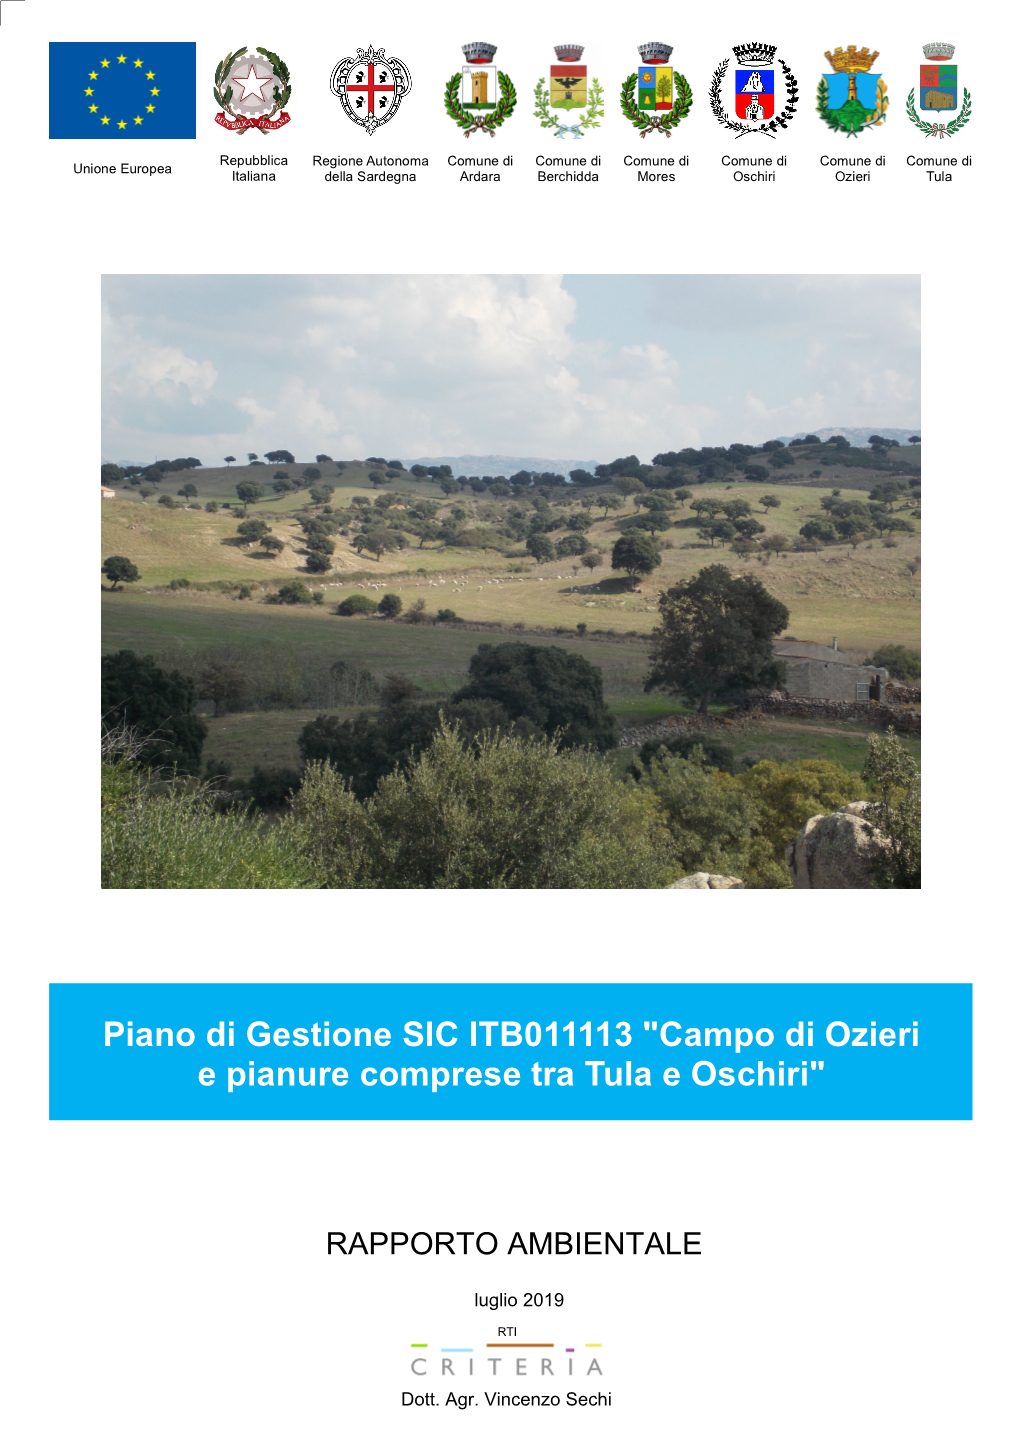 Piano Di Gestione SIC ITB011113 "Campo Di Ozieri E Pianure Comprese Tra Tula E Oschiri"